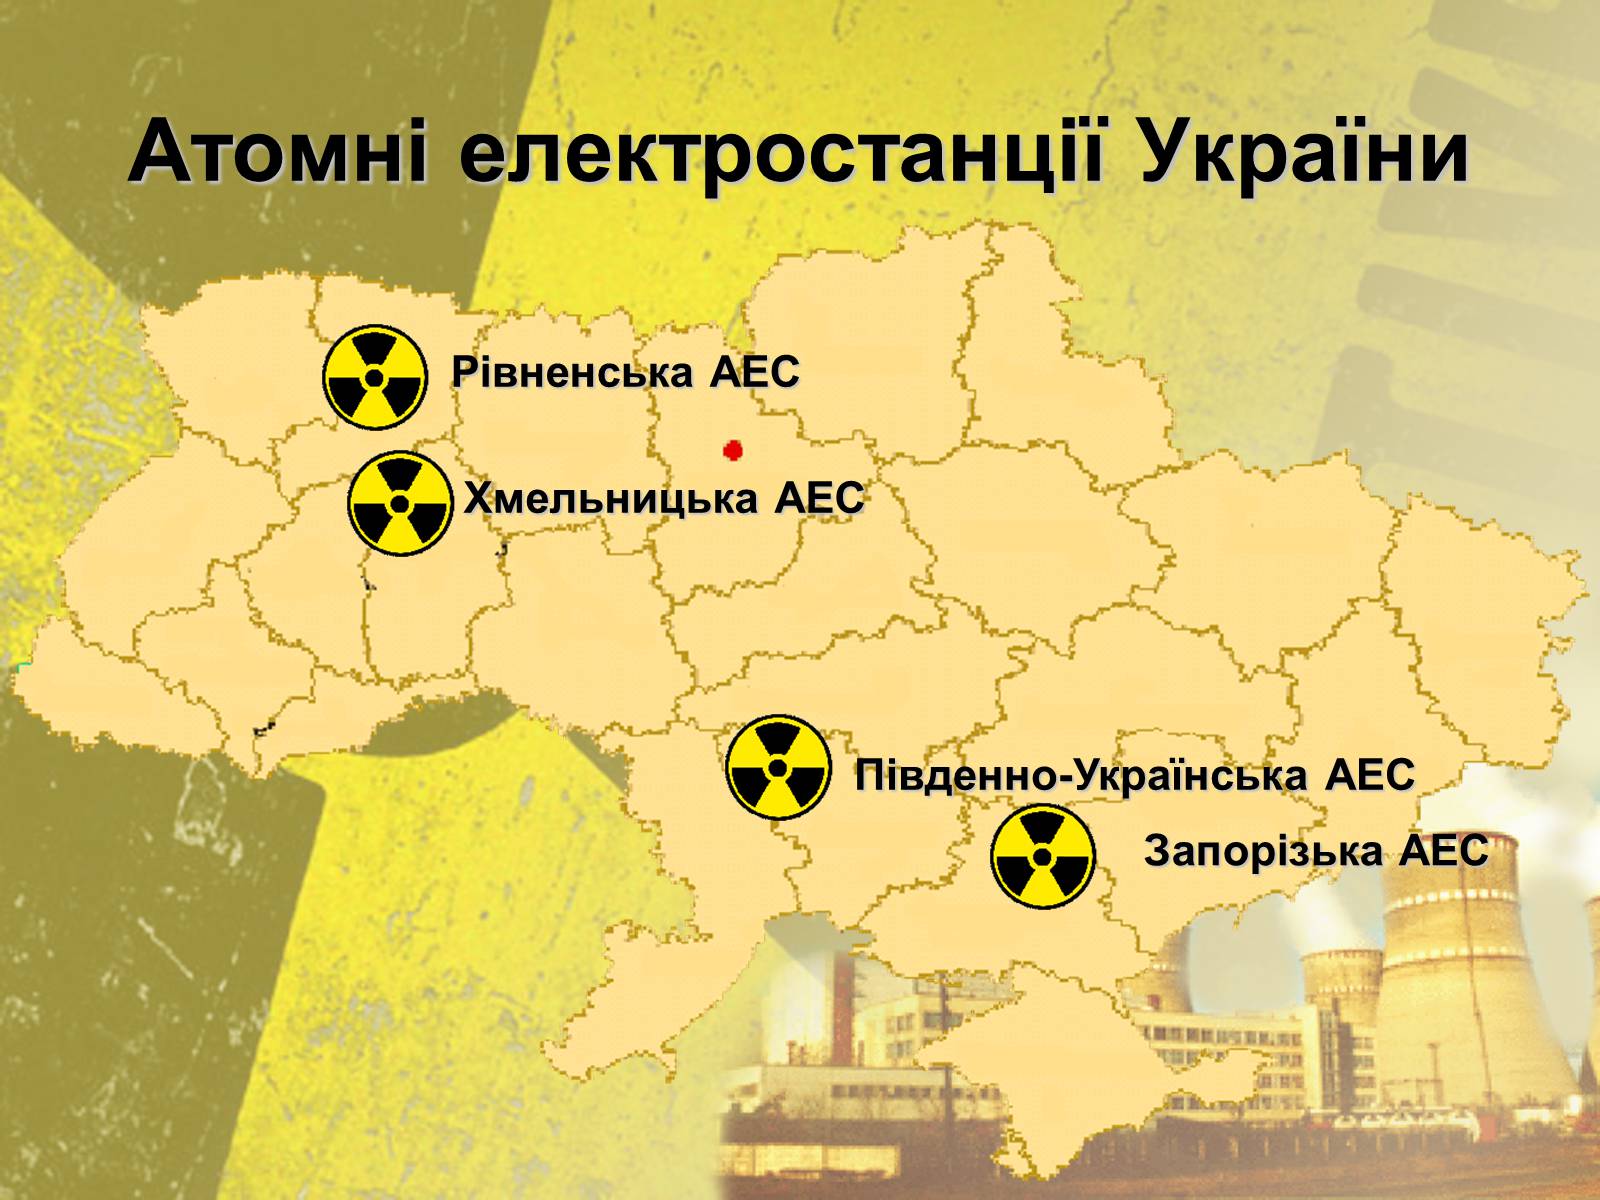 Сколько аэс на украине. Атомные станции Украины на карте. Атомная Энергетика Украины атомные электростанции Украины. Атомные электростанции Украины на карте. Электростанции АЭС Украине карта.